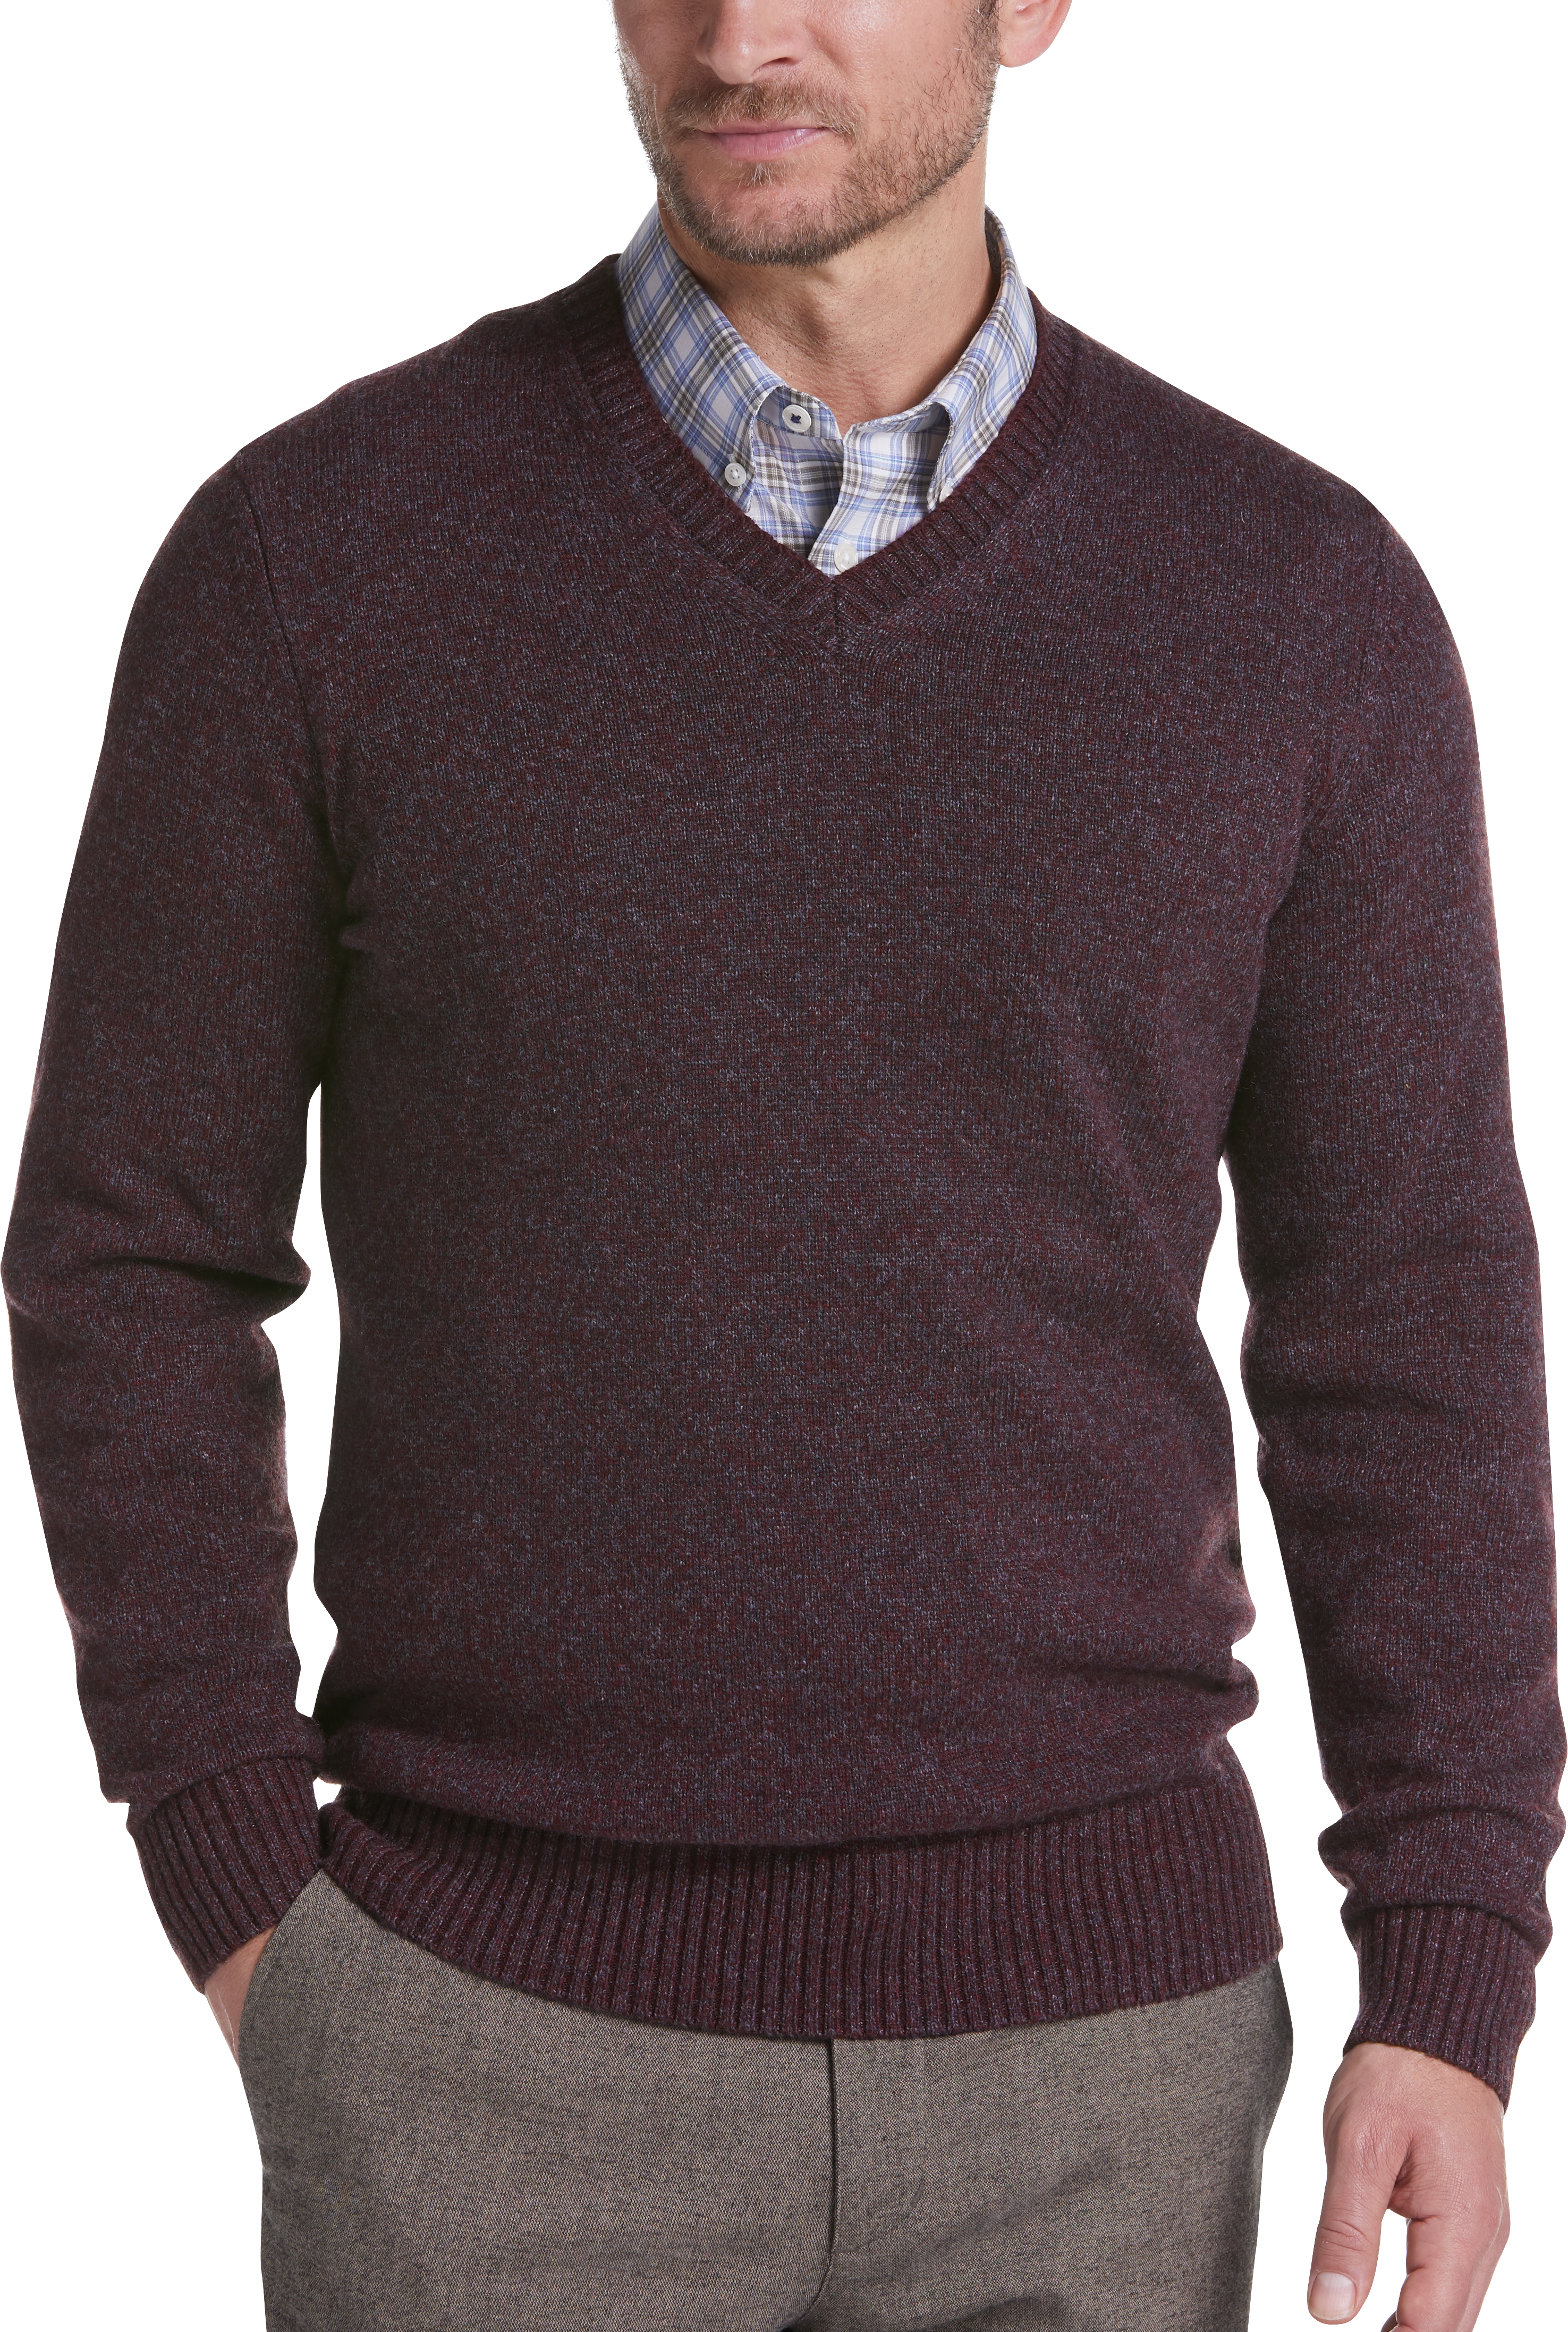 Joseph Abboud Burgundy Modern Fit V-Neck Sweater - Men's Sale | Men's ...